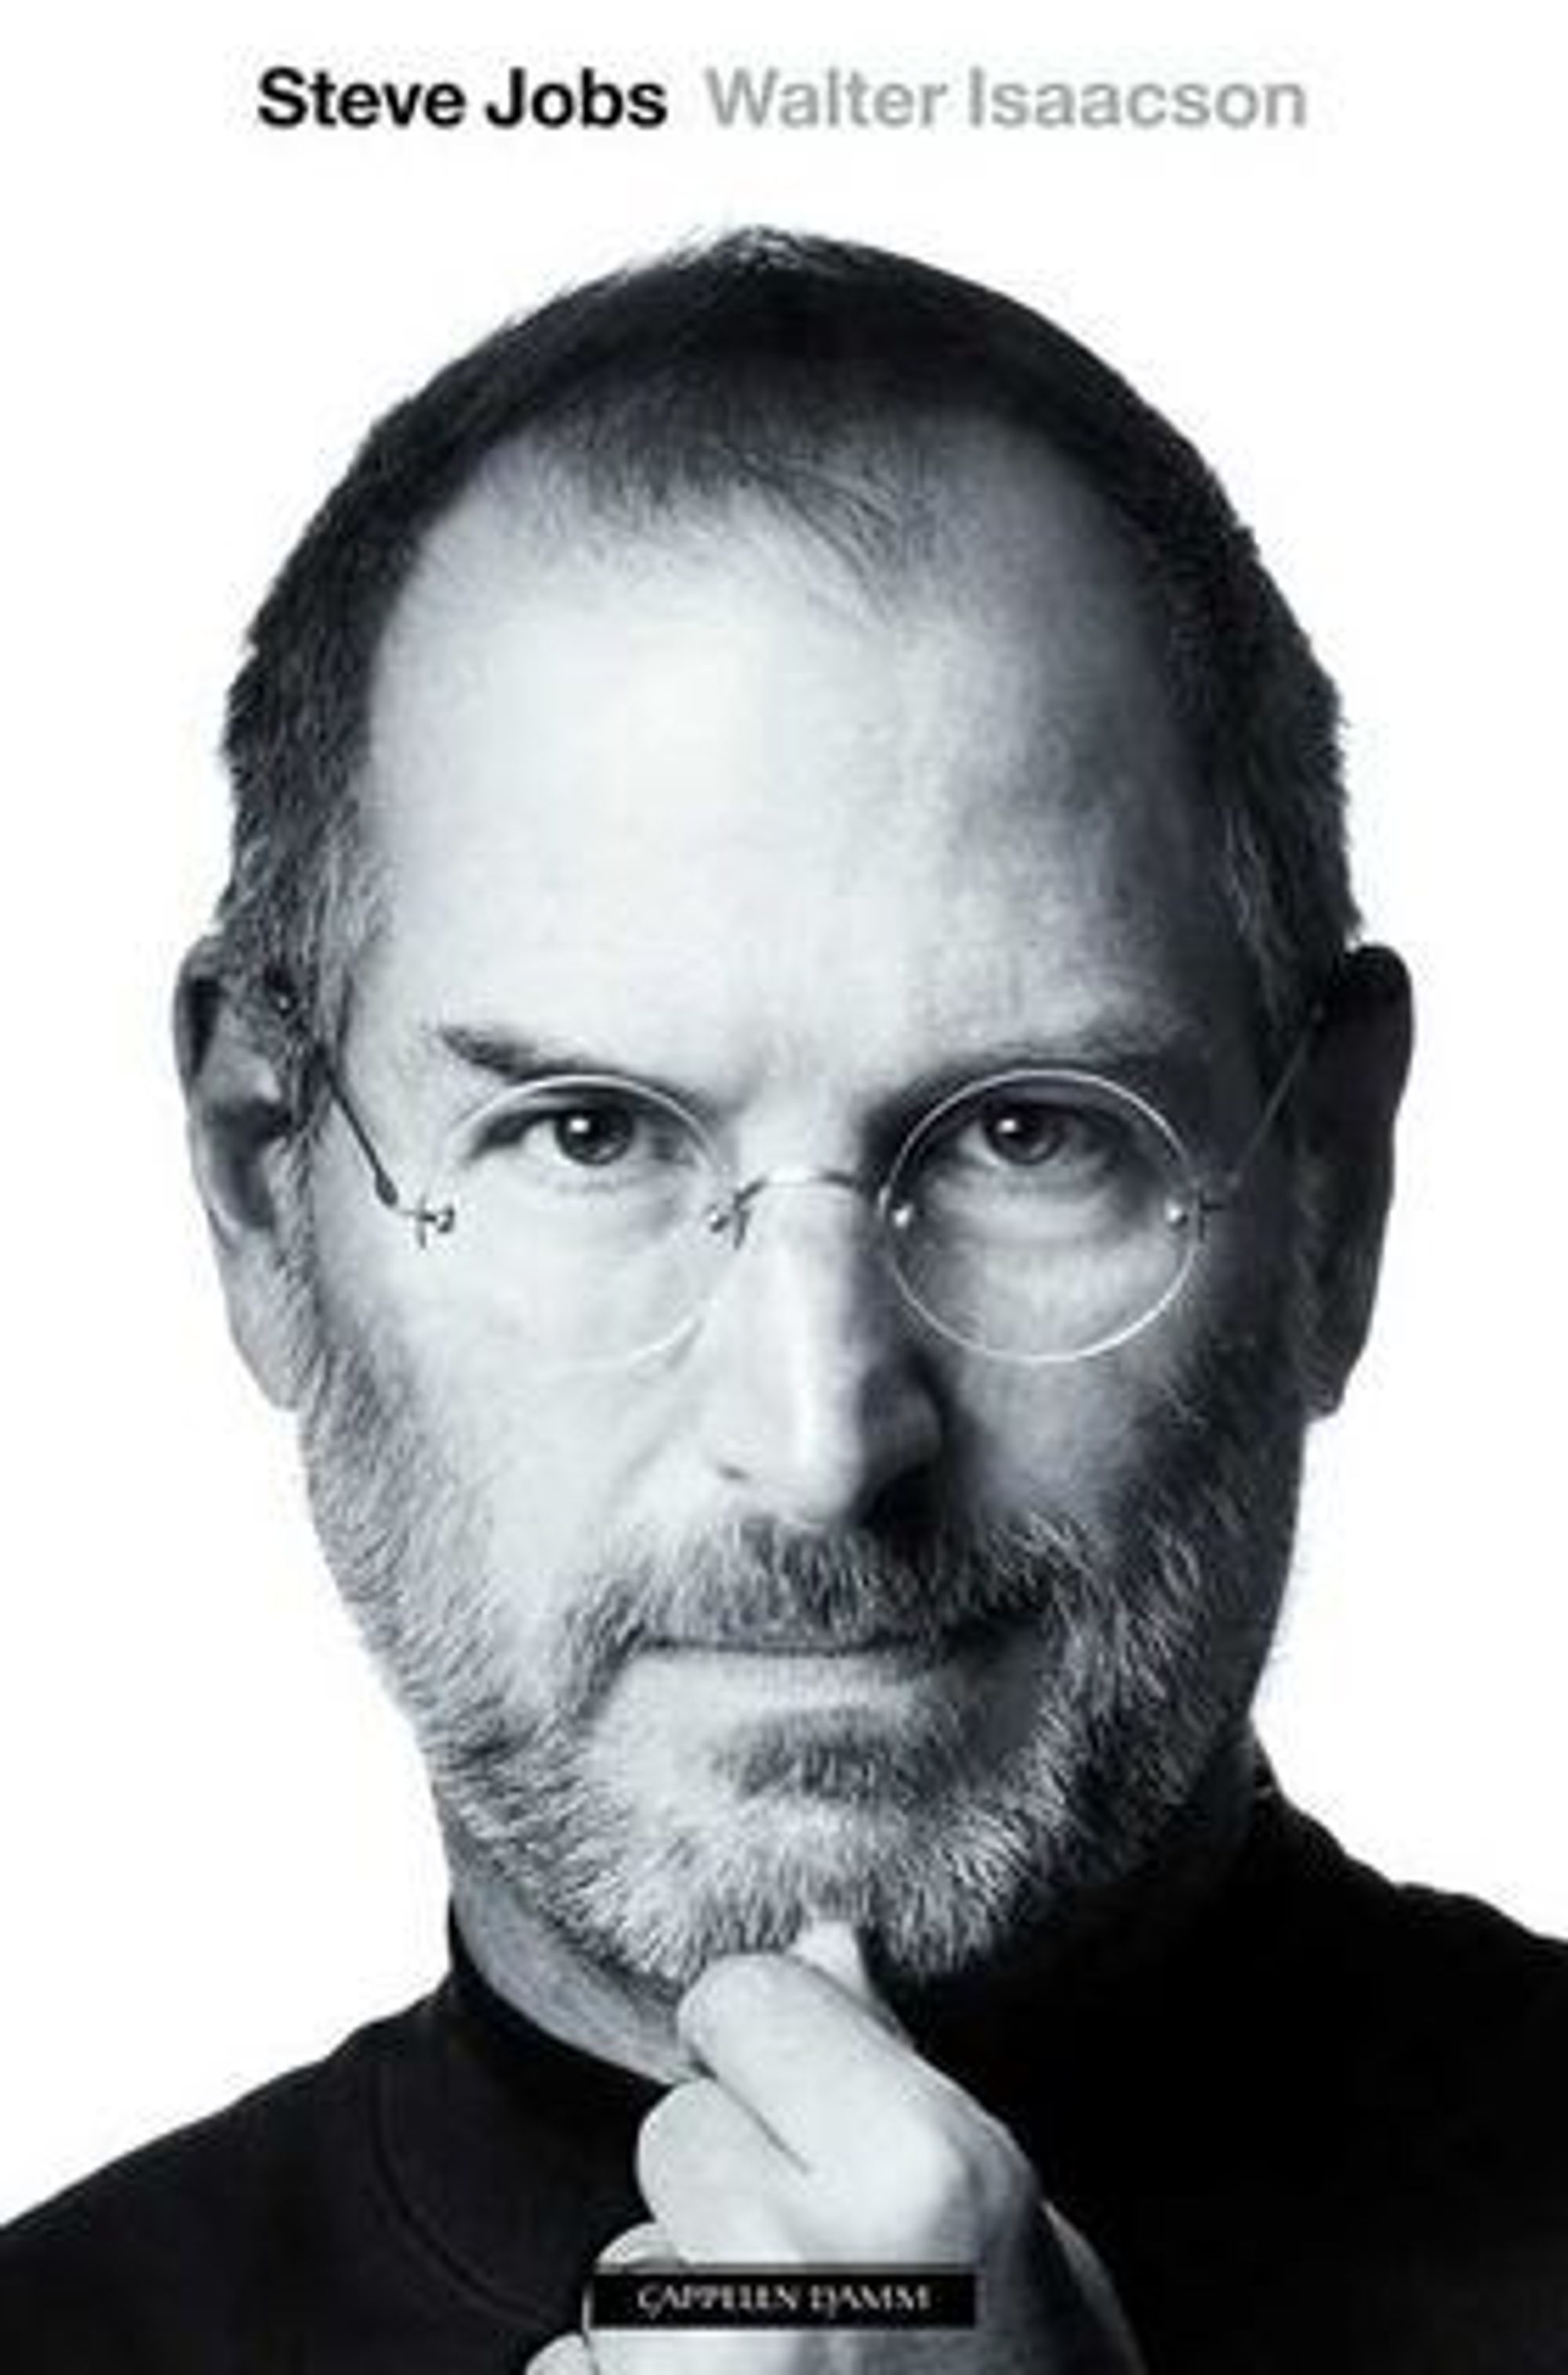 Walter Isaacsons biografi om Steve Jobs er lesverdig, mener digi.nos redaktør Sigvald Sveinbjørnsson.